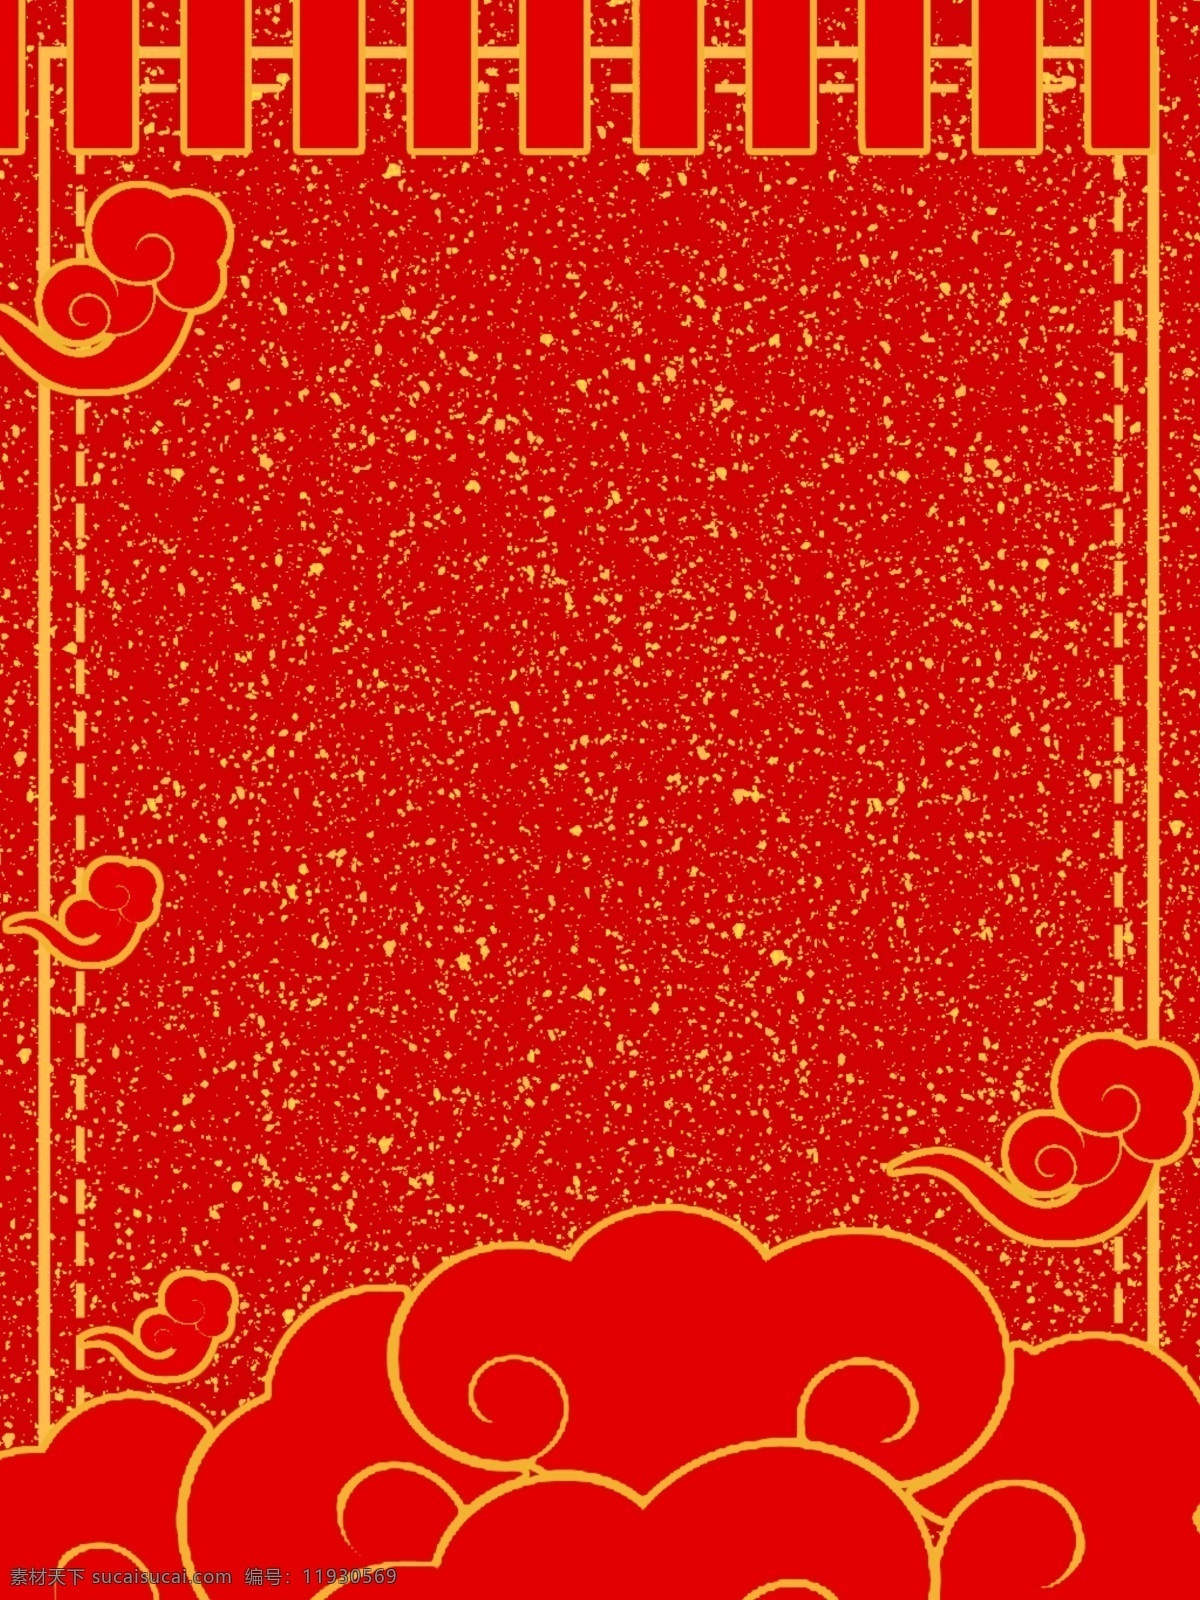 原创 中国 风 金边 颗粒 广告 背景 时尚 金色 红色 喜庆 创意 广告背景 文艺 云纹 吉祥